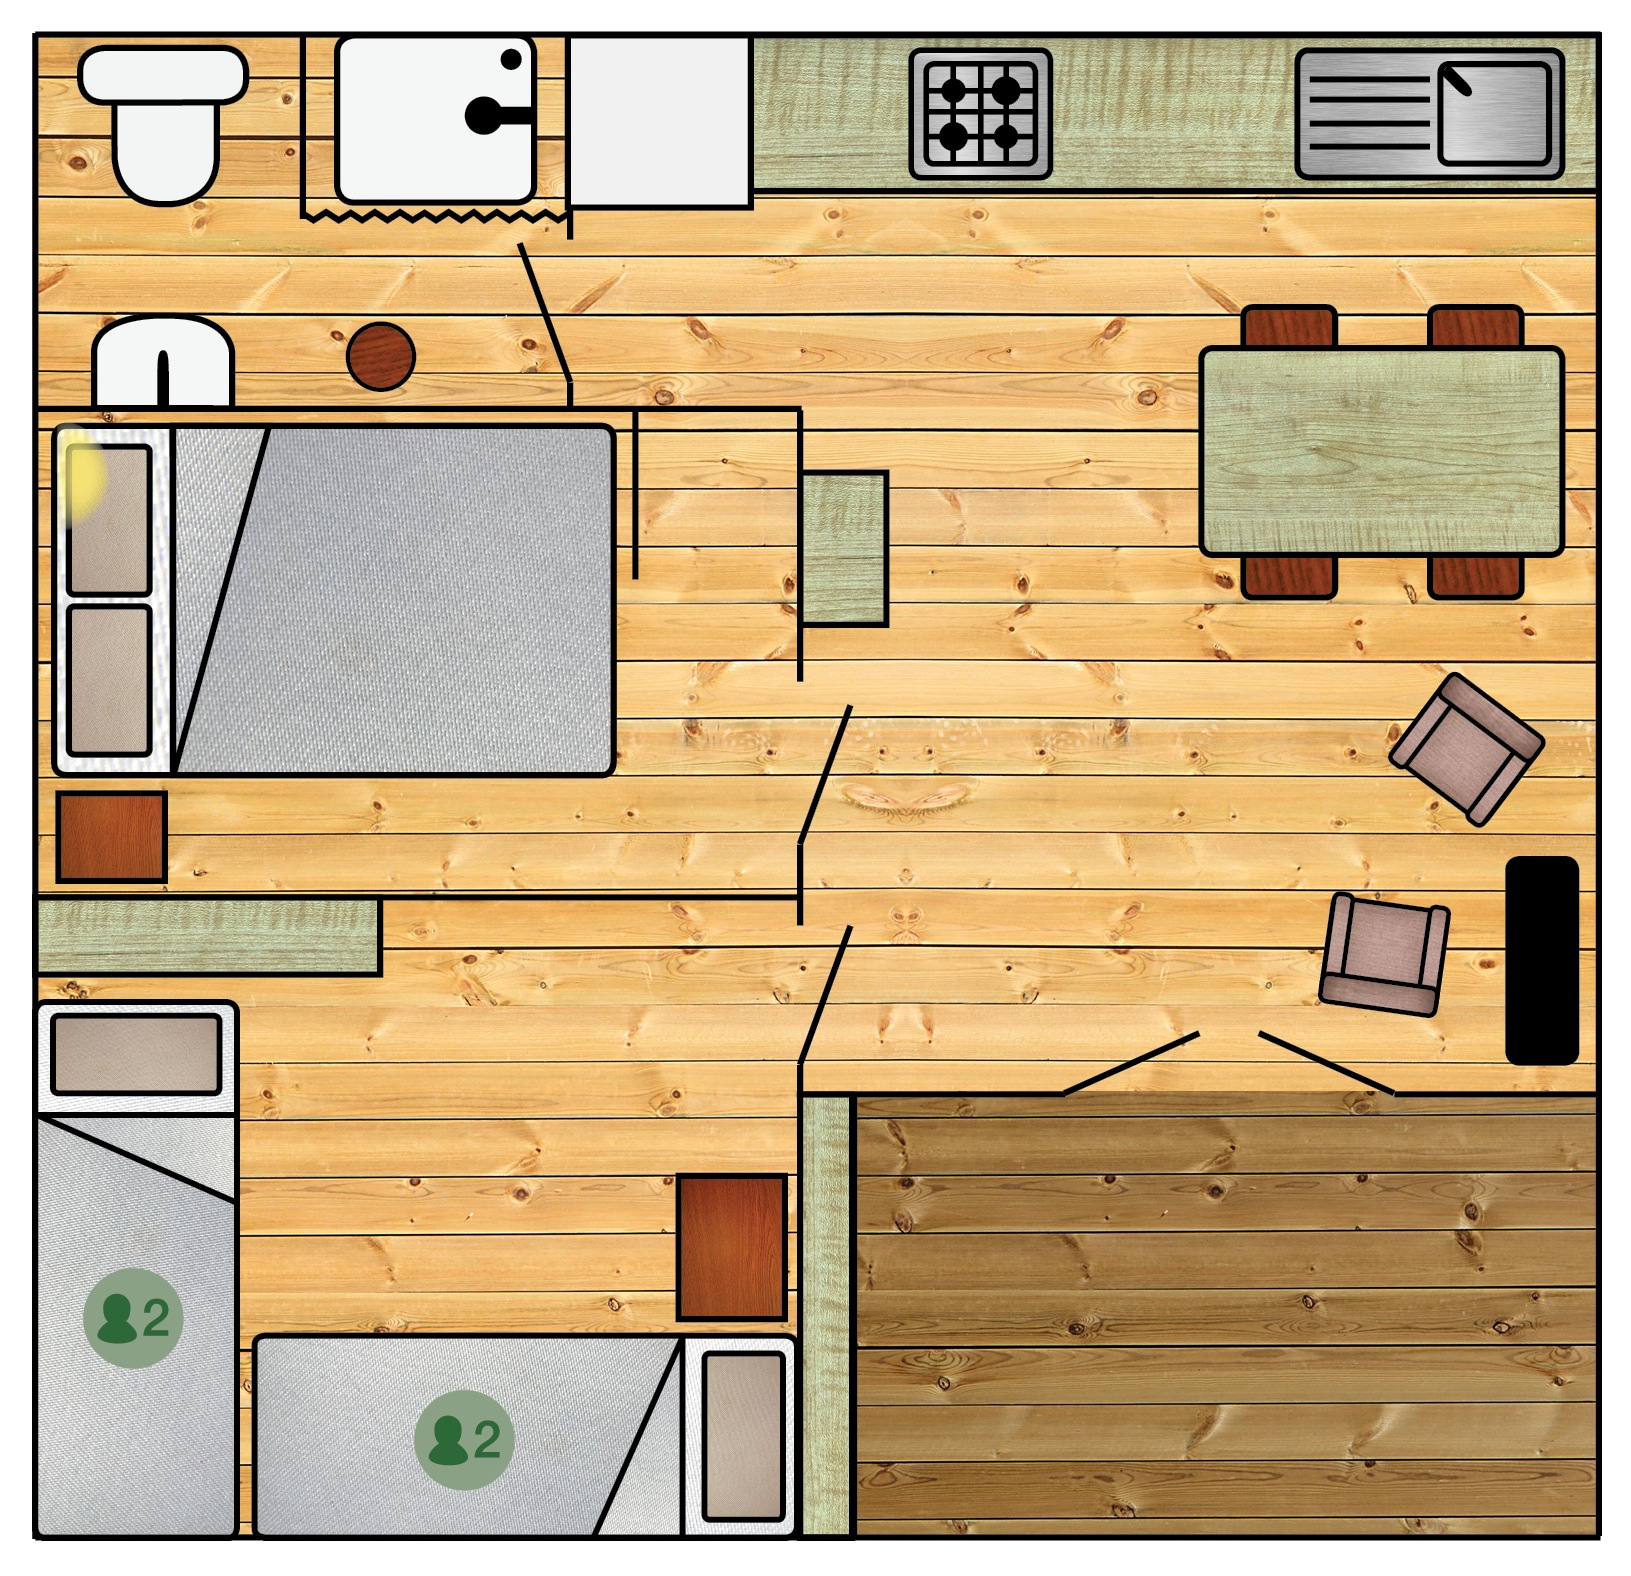 De blokhut beschikt over een ruime woonkeuken, badkamer en twee slaapkamers.